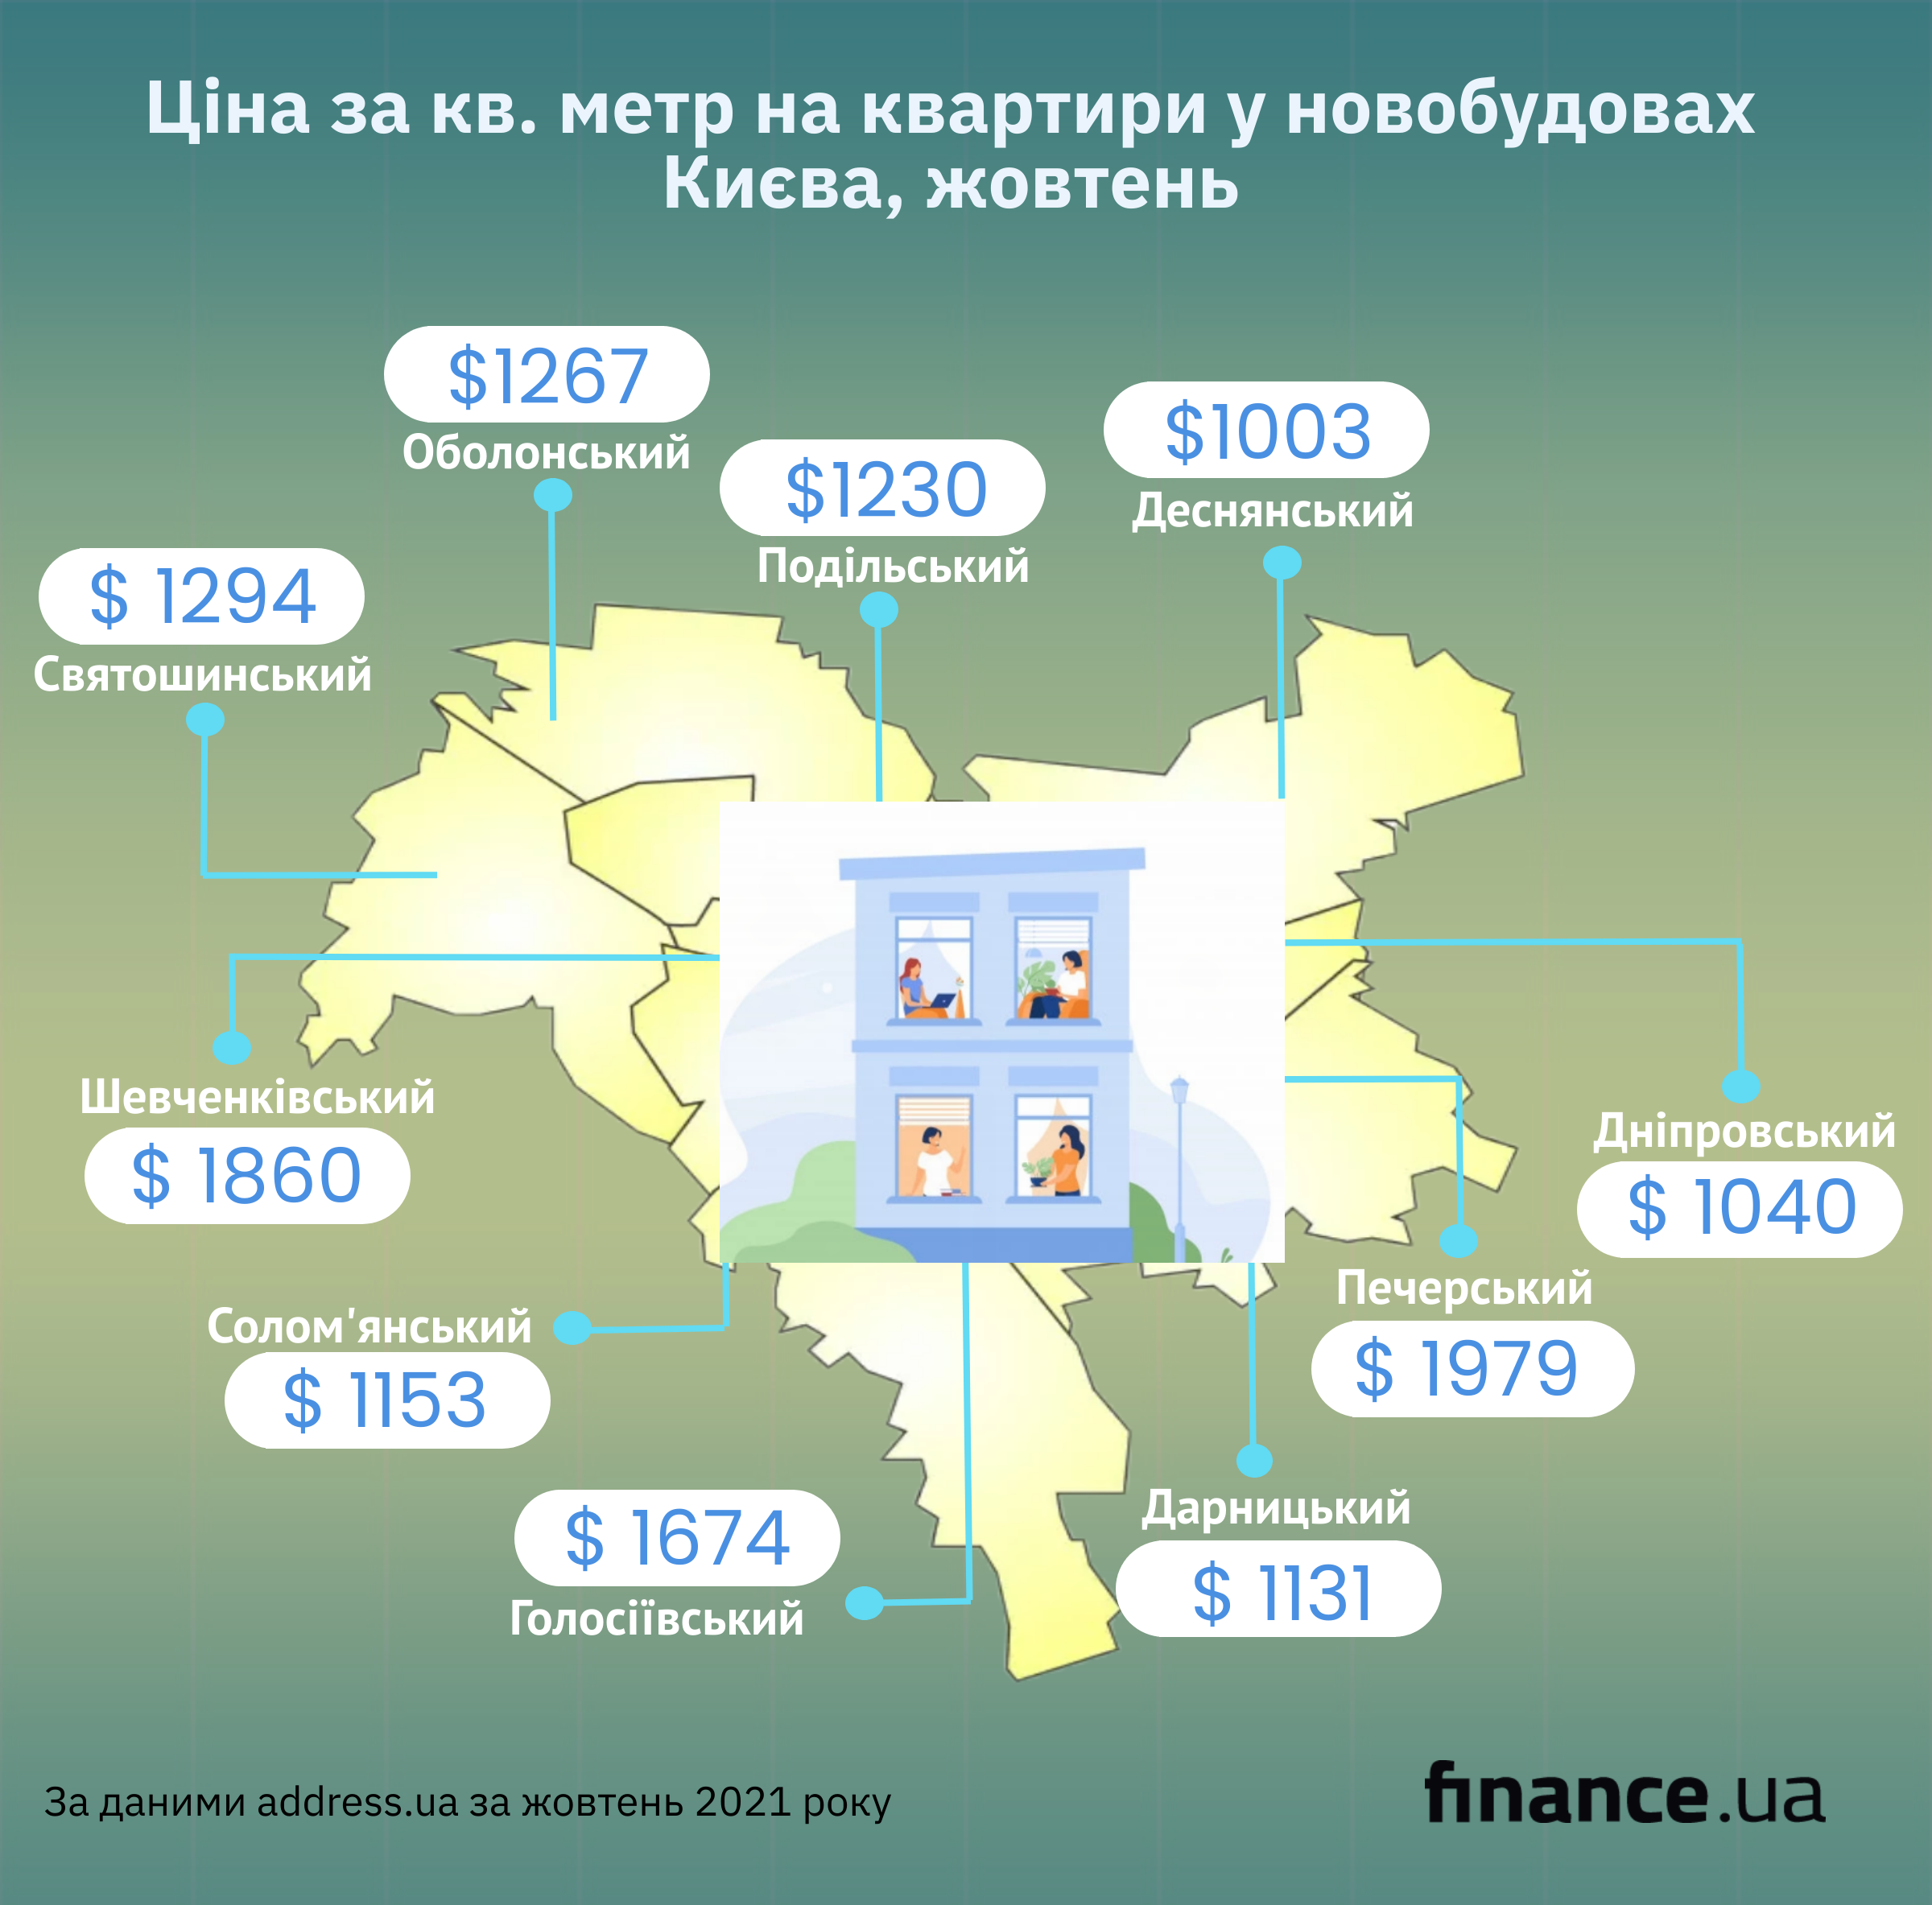 Цены на недвижимость в Киеве (инфографика)